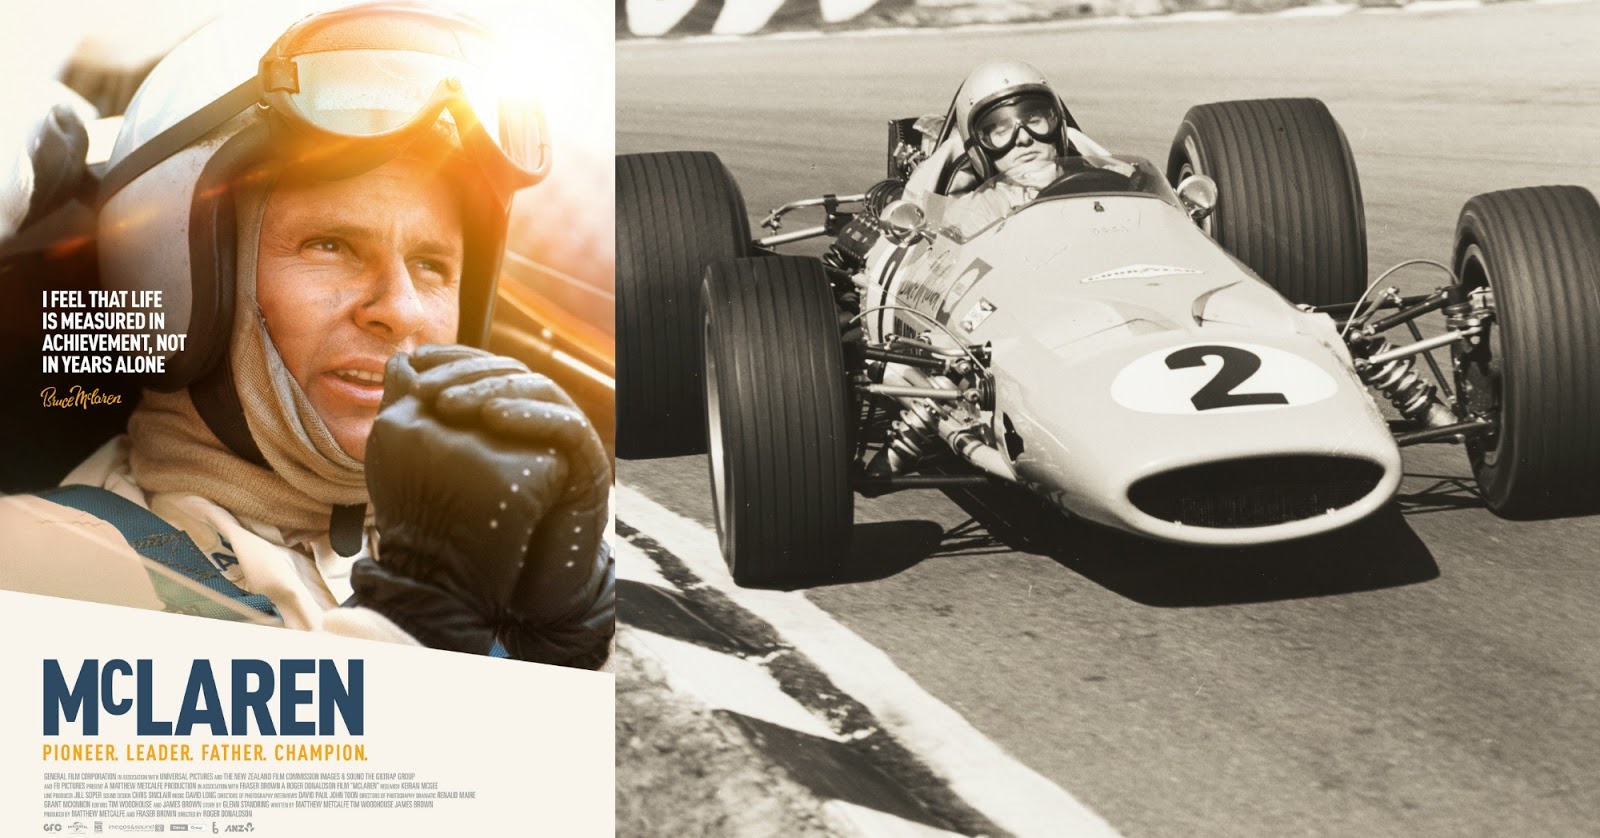 Jack Leslie F1 McLaren film A celebration of Bruce McLarens life and career